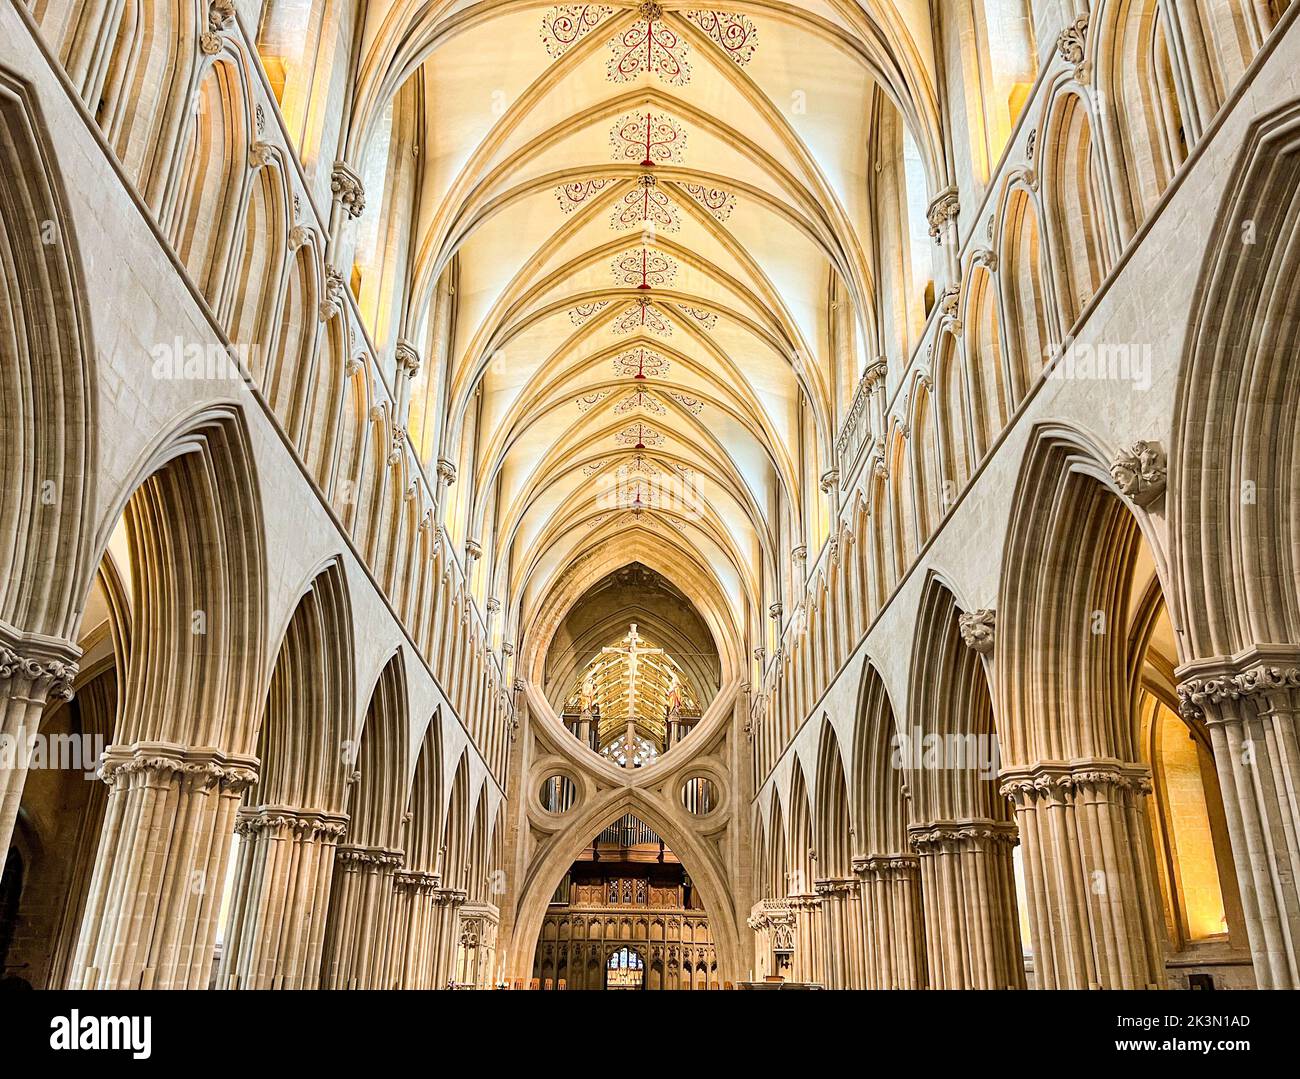 Intérieur de la nef de la cathédrale de Wells, avec architecture gothique perpendiculaire. Wells, Somerset, Royaume-Uni Banque D'Images